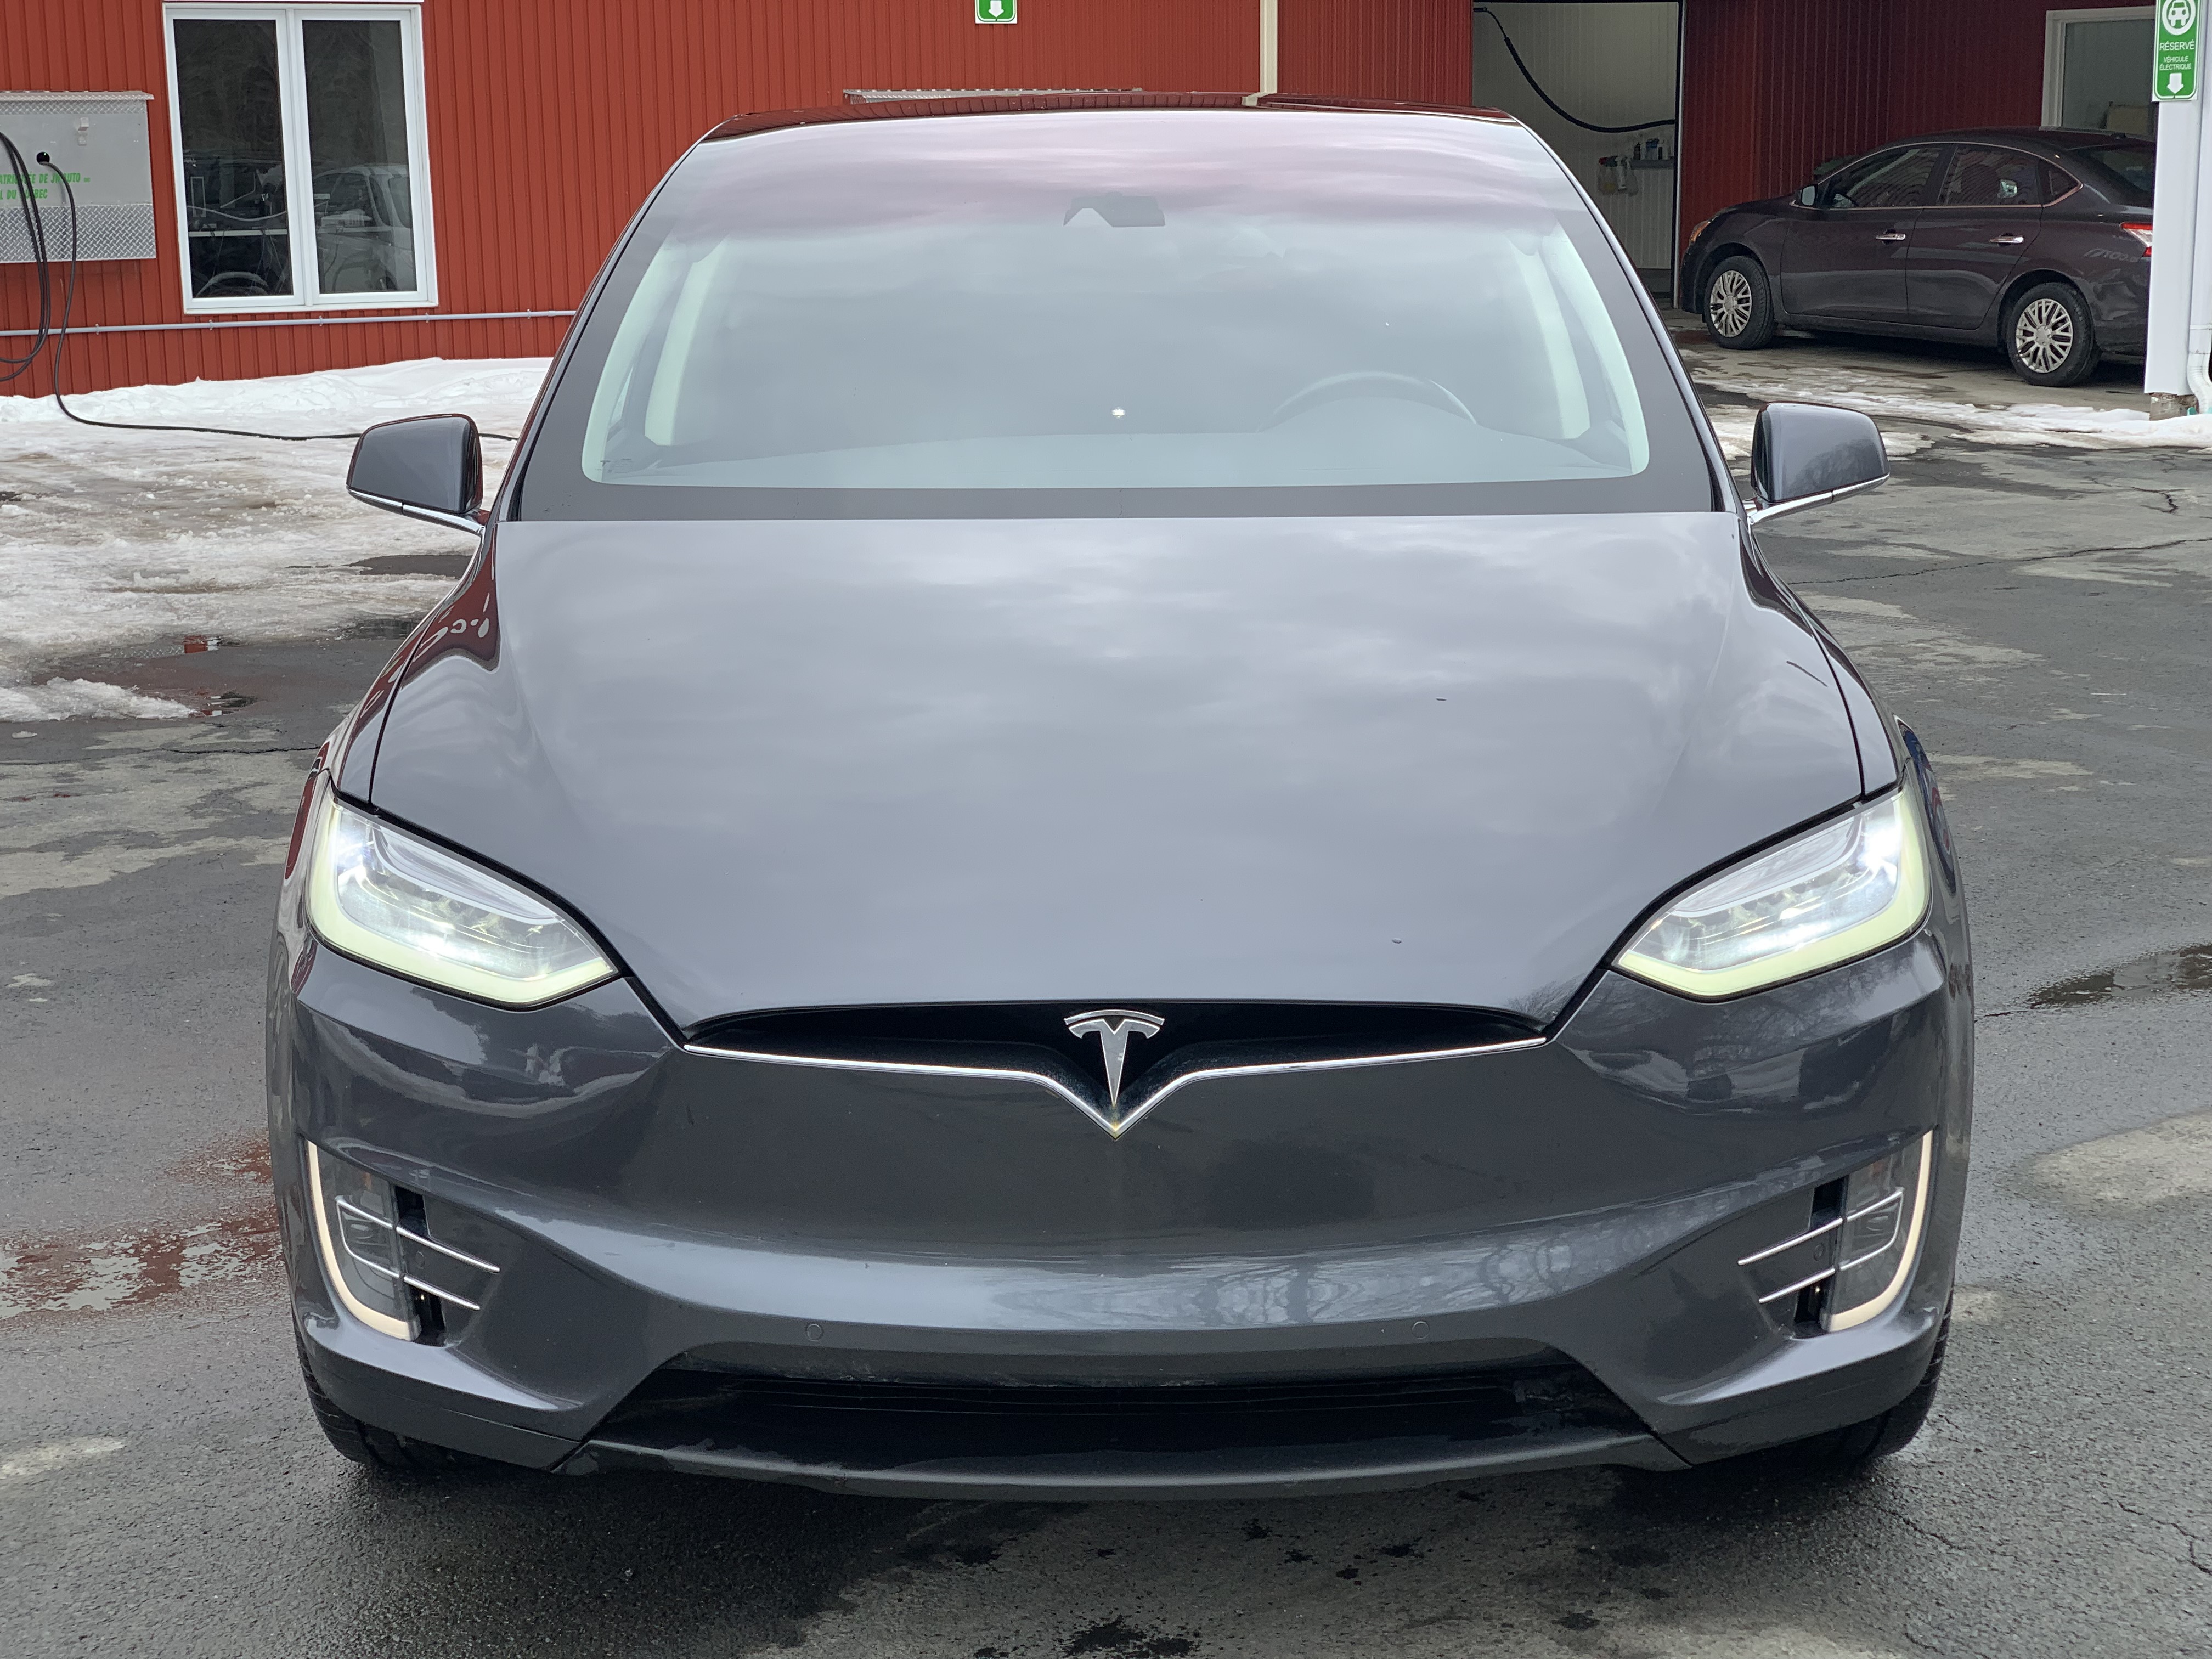 JN auto Tesla Model X75D 6 passagers,Une seule proprio, Garantie prolongée 12 mois/20 000 km incluse, possibilité de surclassement 8608957 2016 Image 1